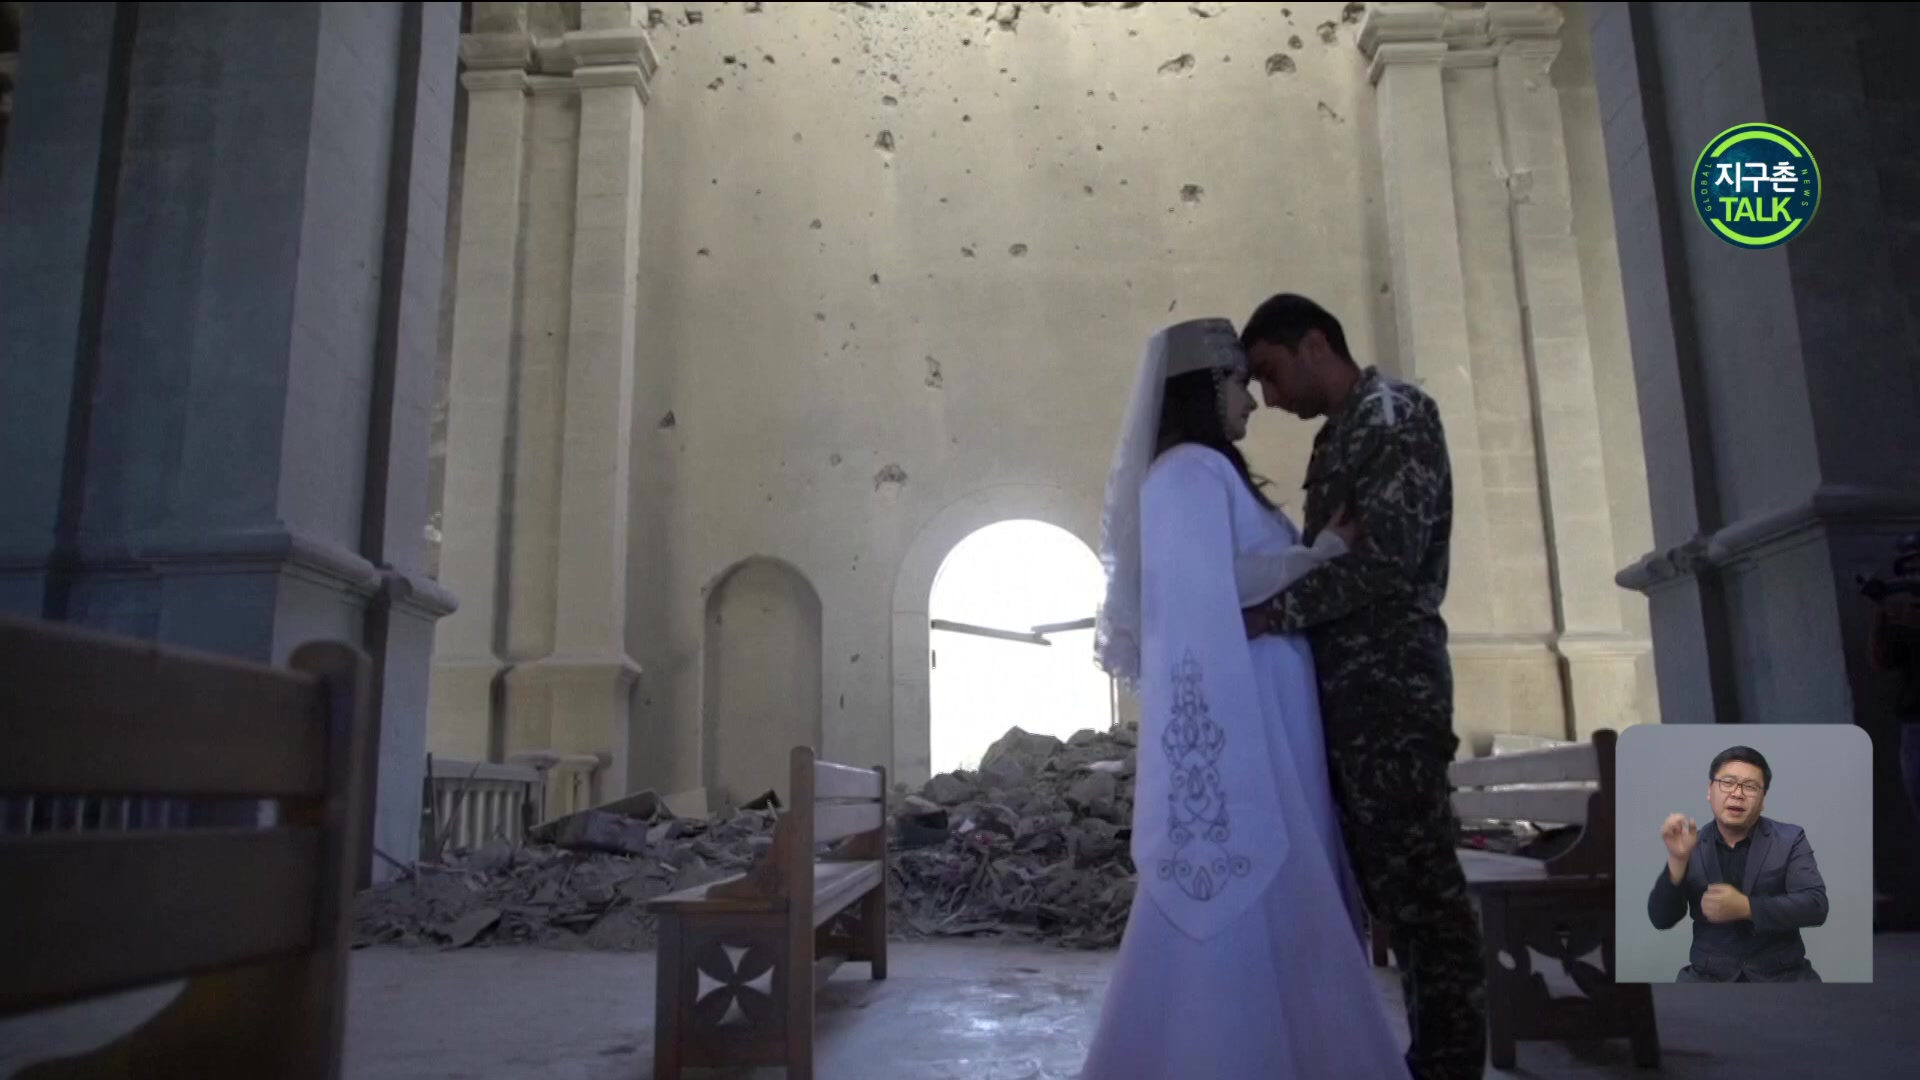 [지구촌 Talk] 폭격 피해 고스란히 남은 성당서 결혼식…아르메니아군 커플